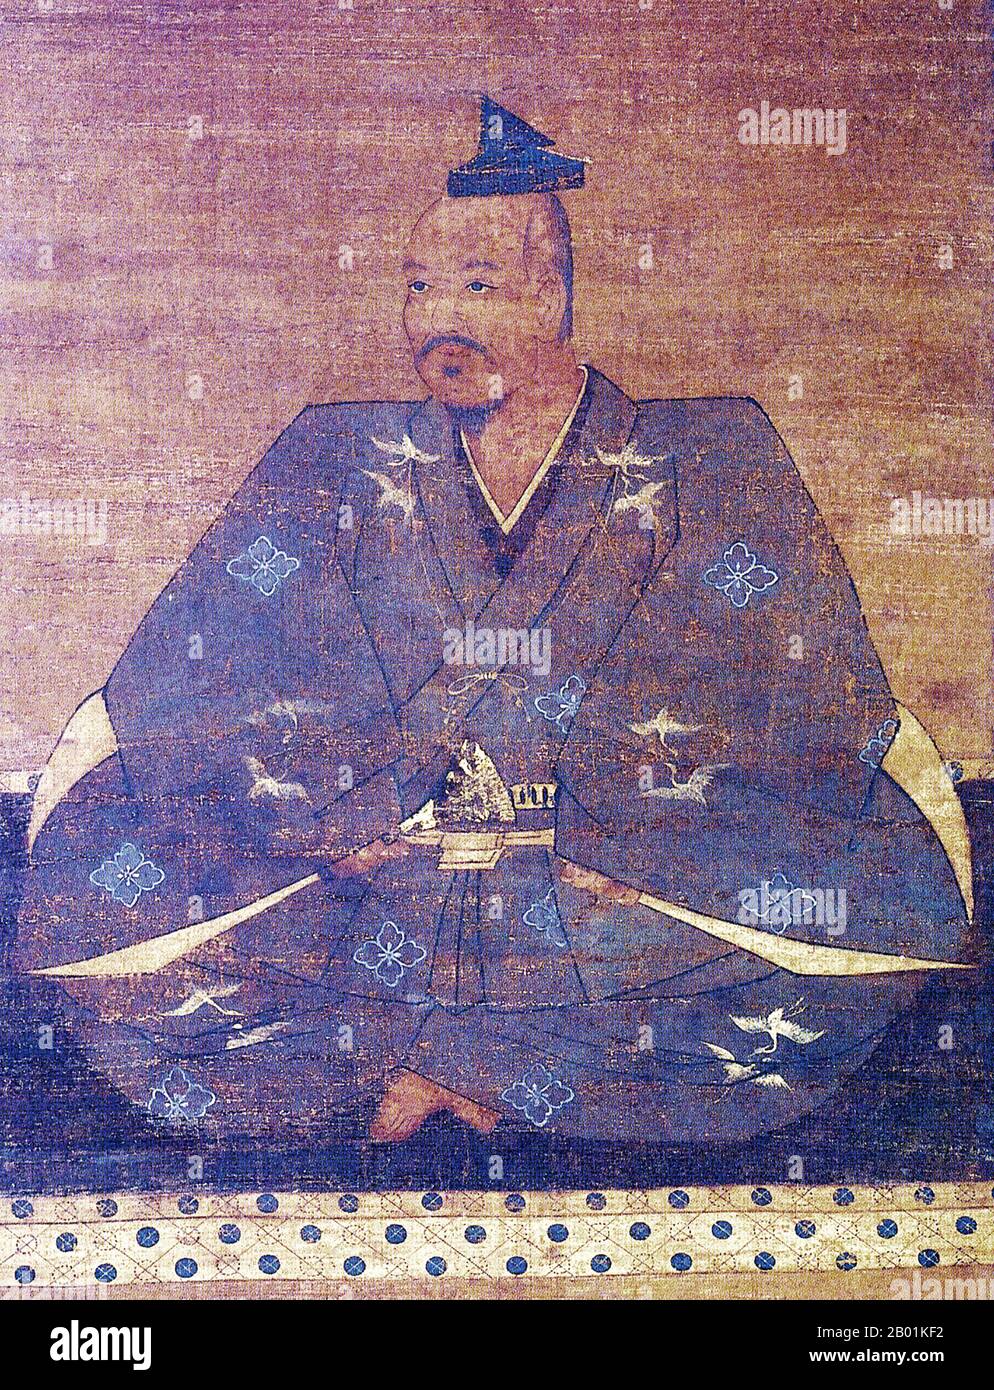 Japan: Takeda Shingen (1. Dezember 1521 – 13. Mai 1573), Sengoku-Periode Daimyo und Militarist. Hängende Seidenmalerei aus dem 16. Jahrhundert. Takeda Shingen aus der Provinz Kai war ein bedeutender Daimyo im feudalen Japan mit außergewöhnlichem militärischem Prestige in der späten Phase der Sengoku-Zeit. Bekannt als „Tiger of Kai“, war er einer der mächtigsten und einflussreichsten Führer der Ära. Er ist berühmt für die Schlacht von Mikatagahara, wo er Tokugawa Ieyasu erfolgreich besiegte und dem zukünftigen Shogun eine seiner schlimmsten Niederlagen übergab. Er starb unter unklaren Umständen während der Belagerung von Noda Castle. Stockfoto